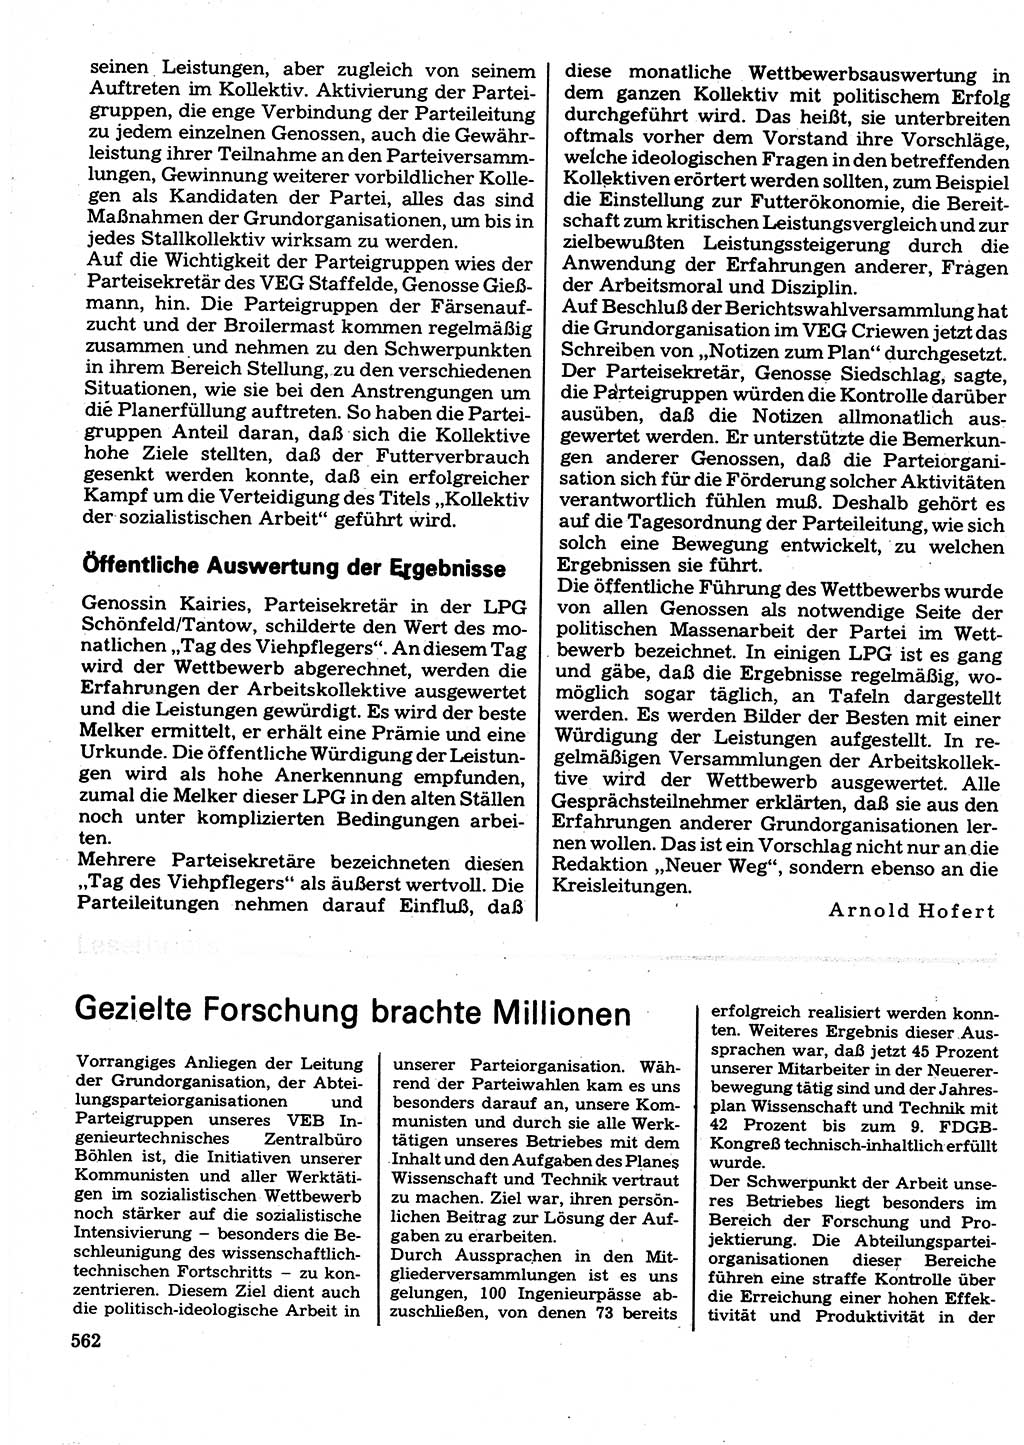 Neuer Weg (NW), Organ des Zentralkomitees (ZK) der SED (Sozialistische Einheitspartei Deutschlands) für Fragen des Parteilebens, 32. Jahrgang [Deutsche Demokratische Republik (DDR)] 1977, Seite 562 (NW ZK SED DDR 1977, S. 562)